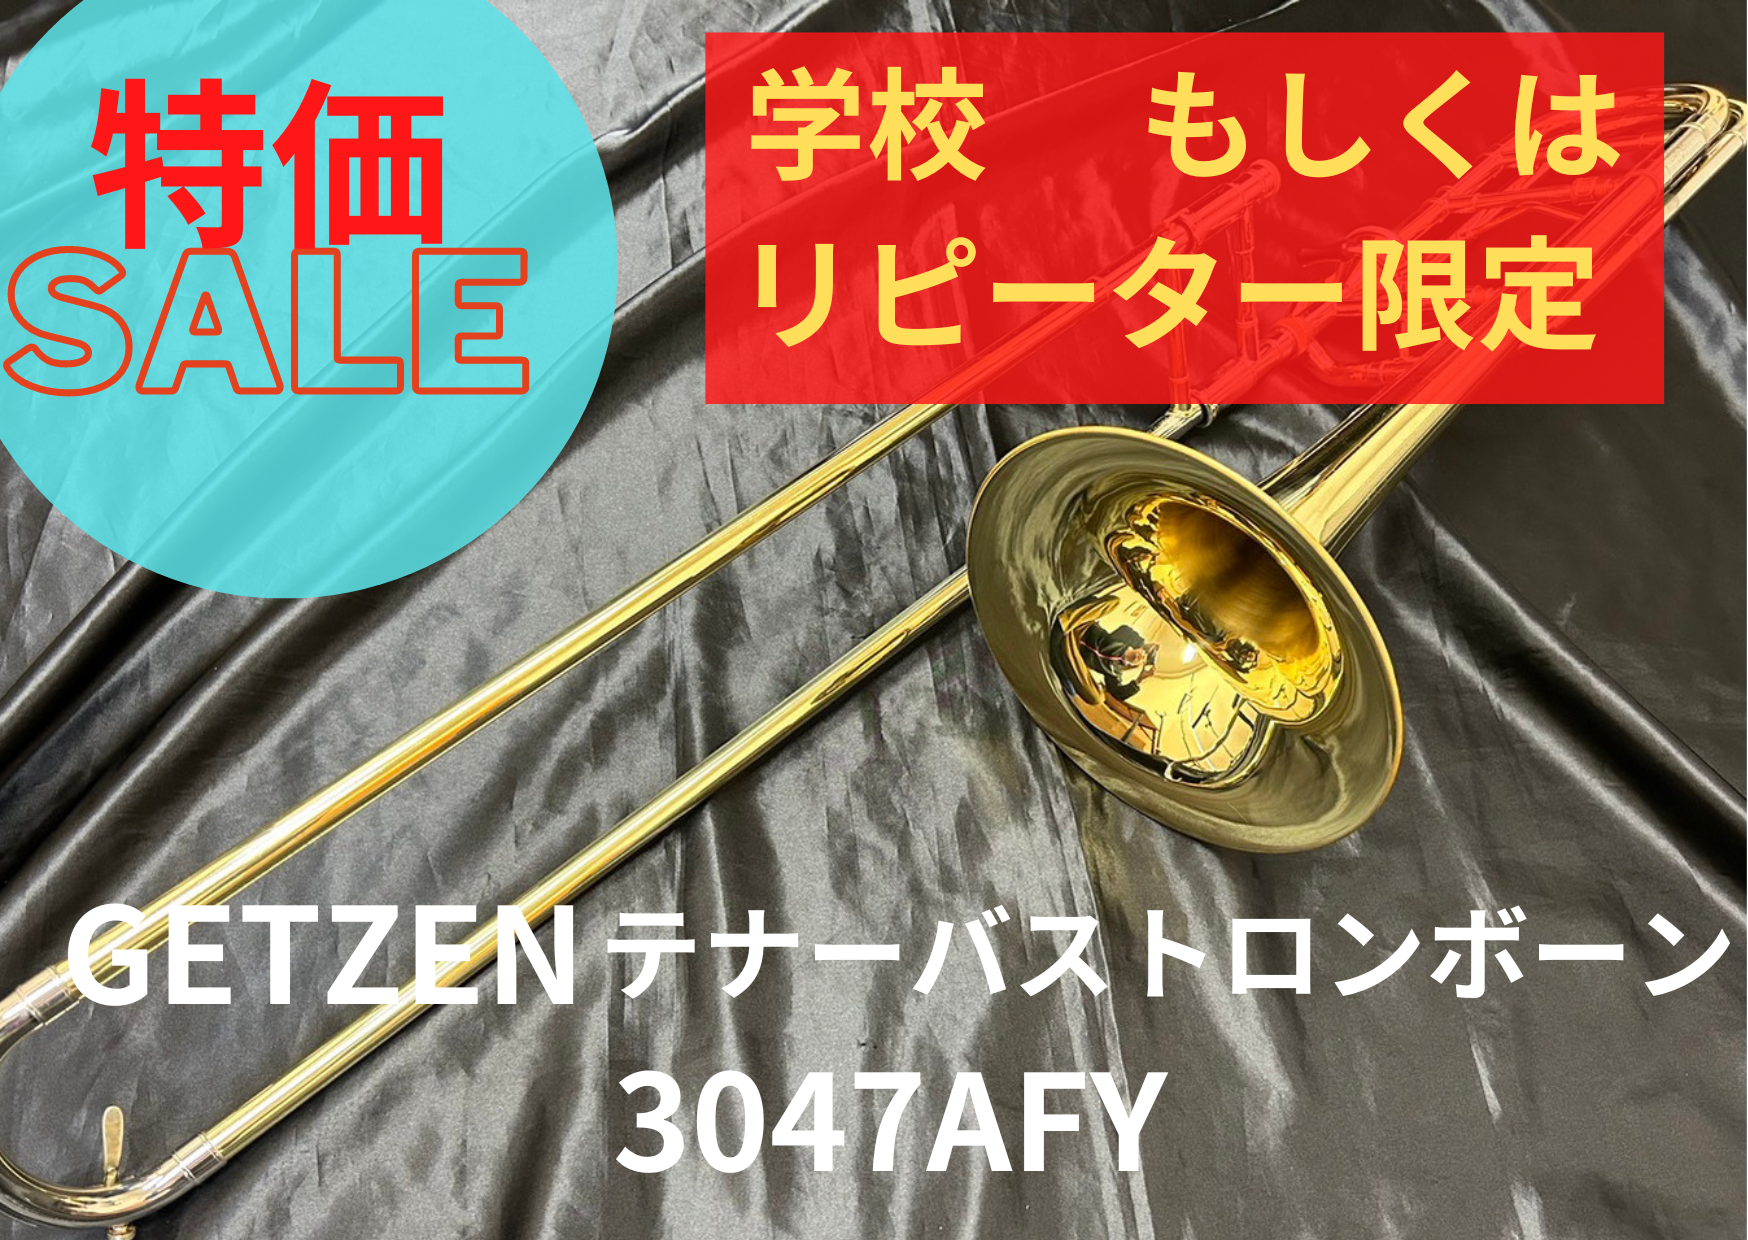 ゲッツェン テナーバストロンボーン 3047AFY GETZEN - 楽器、器材